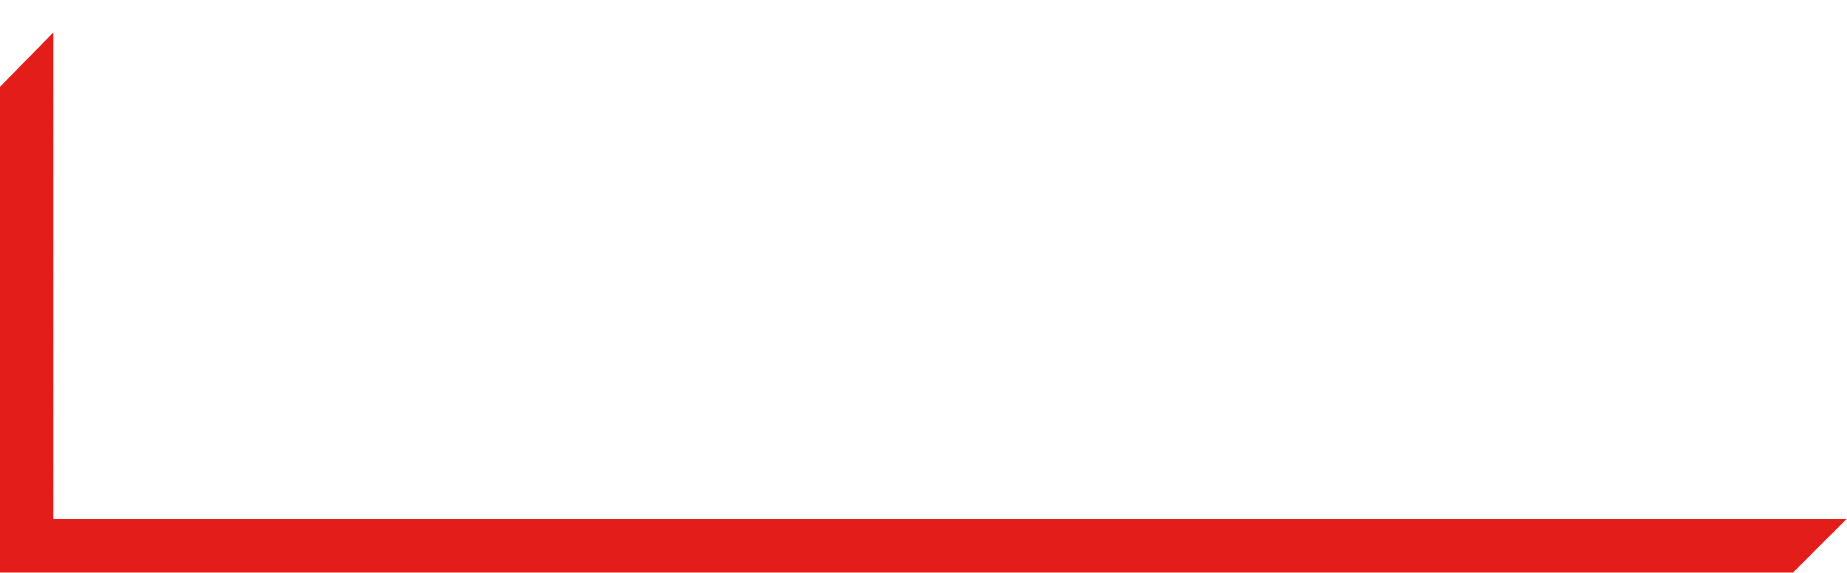 Burford Capital logo large for dark backgrounds (transparent PNG)